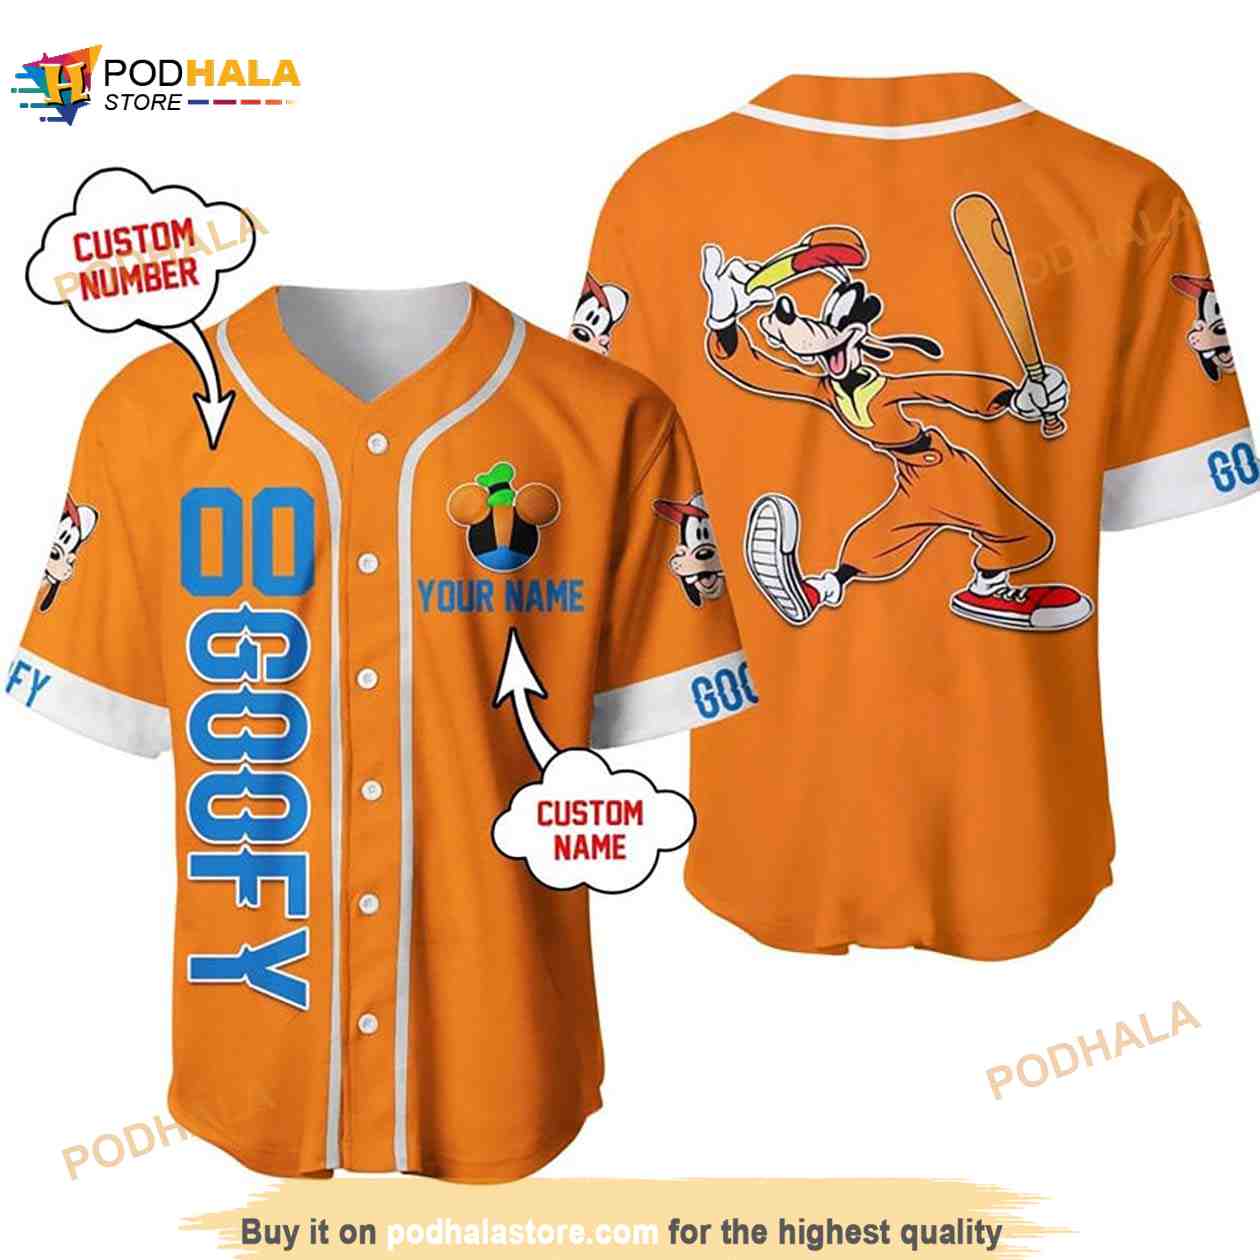 Personalized Disneyland Walt Disney World Baseball Jersey Shirt Size S-5XL